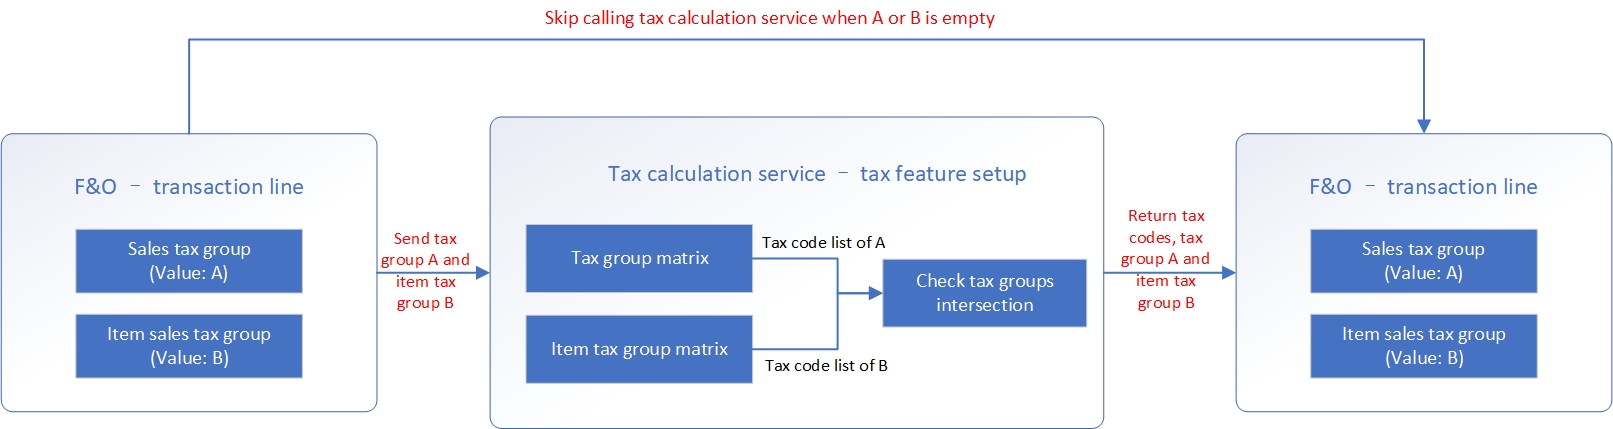 Captura de tela do fluxo que combina a lógica de determinação do código de imposto com a substituição do imposto = Sim.